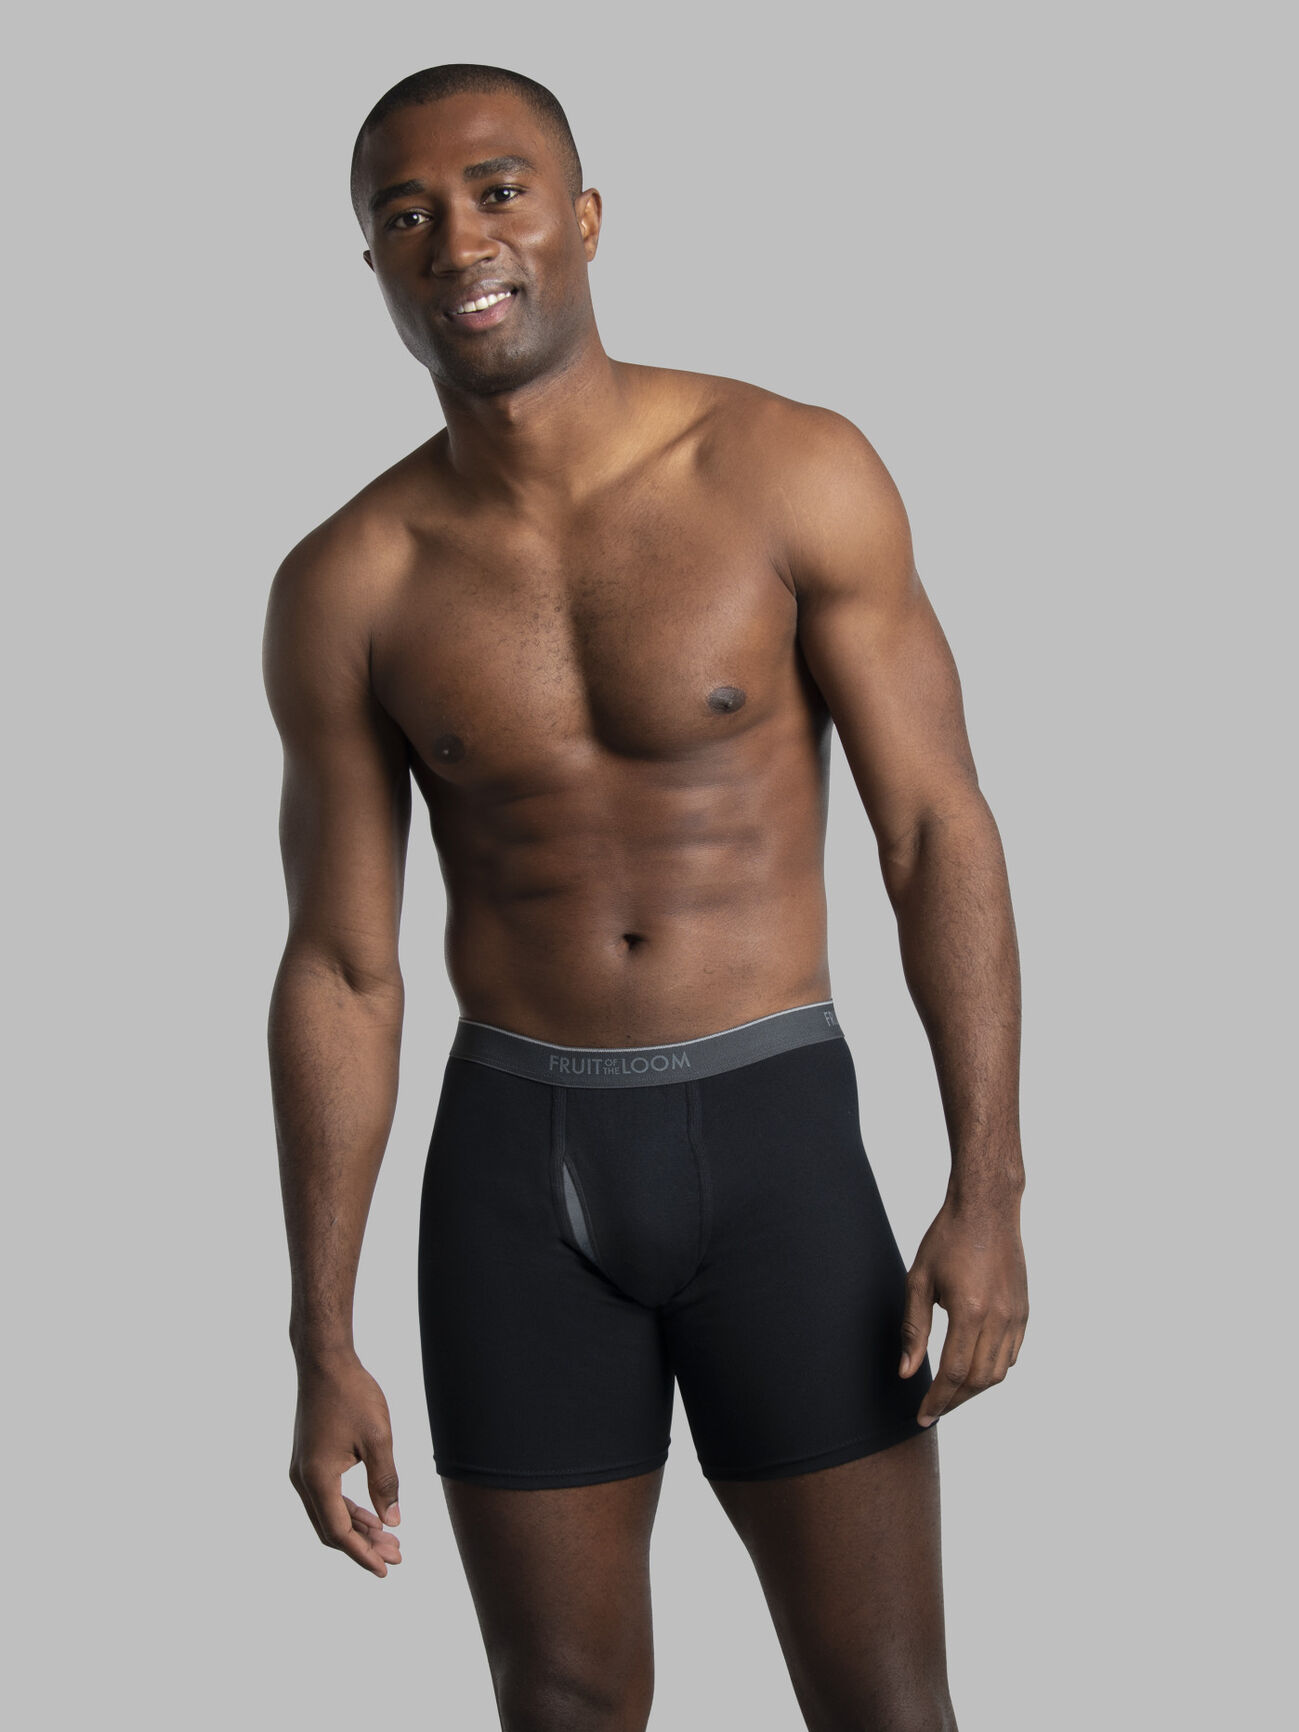 400 Disposable Stretch Mesh Underwear (Briefs) LARGE/ORANGE - ,  Inc.